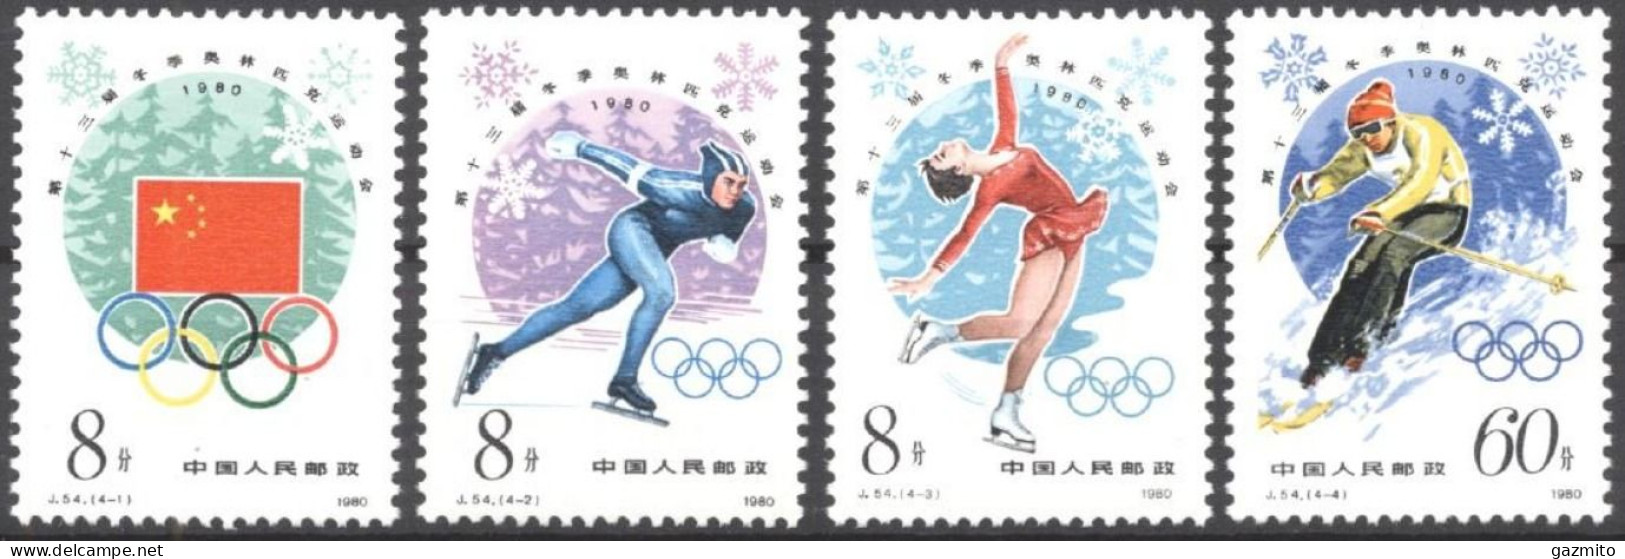 China 1980, Winter Olympic Games, Lake Placid, Skating, Skiing, 4val - Pattinaggio Artistico